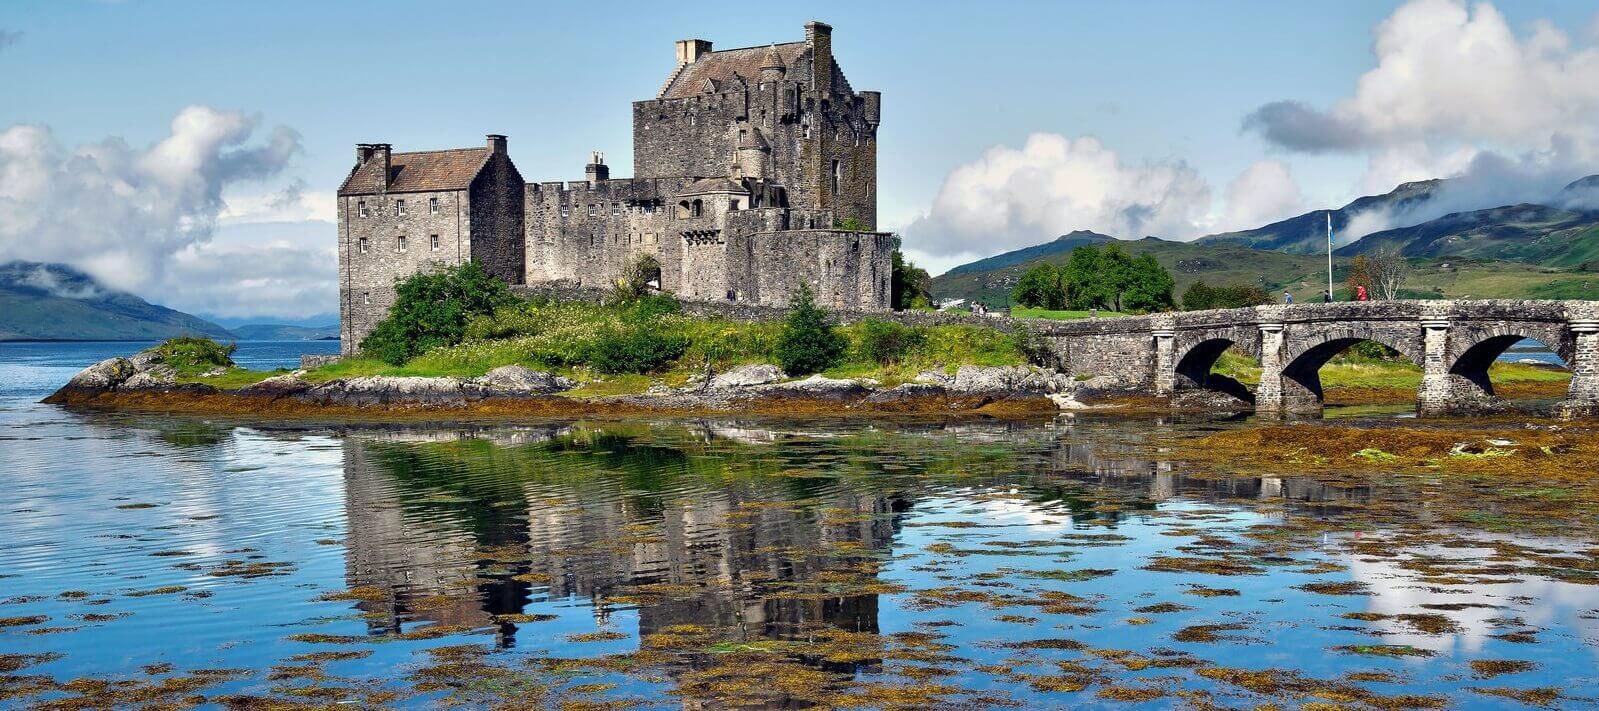 Eilean Donan Castle Dornie by Kyle of Lochalsh 